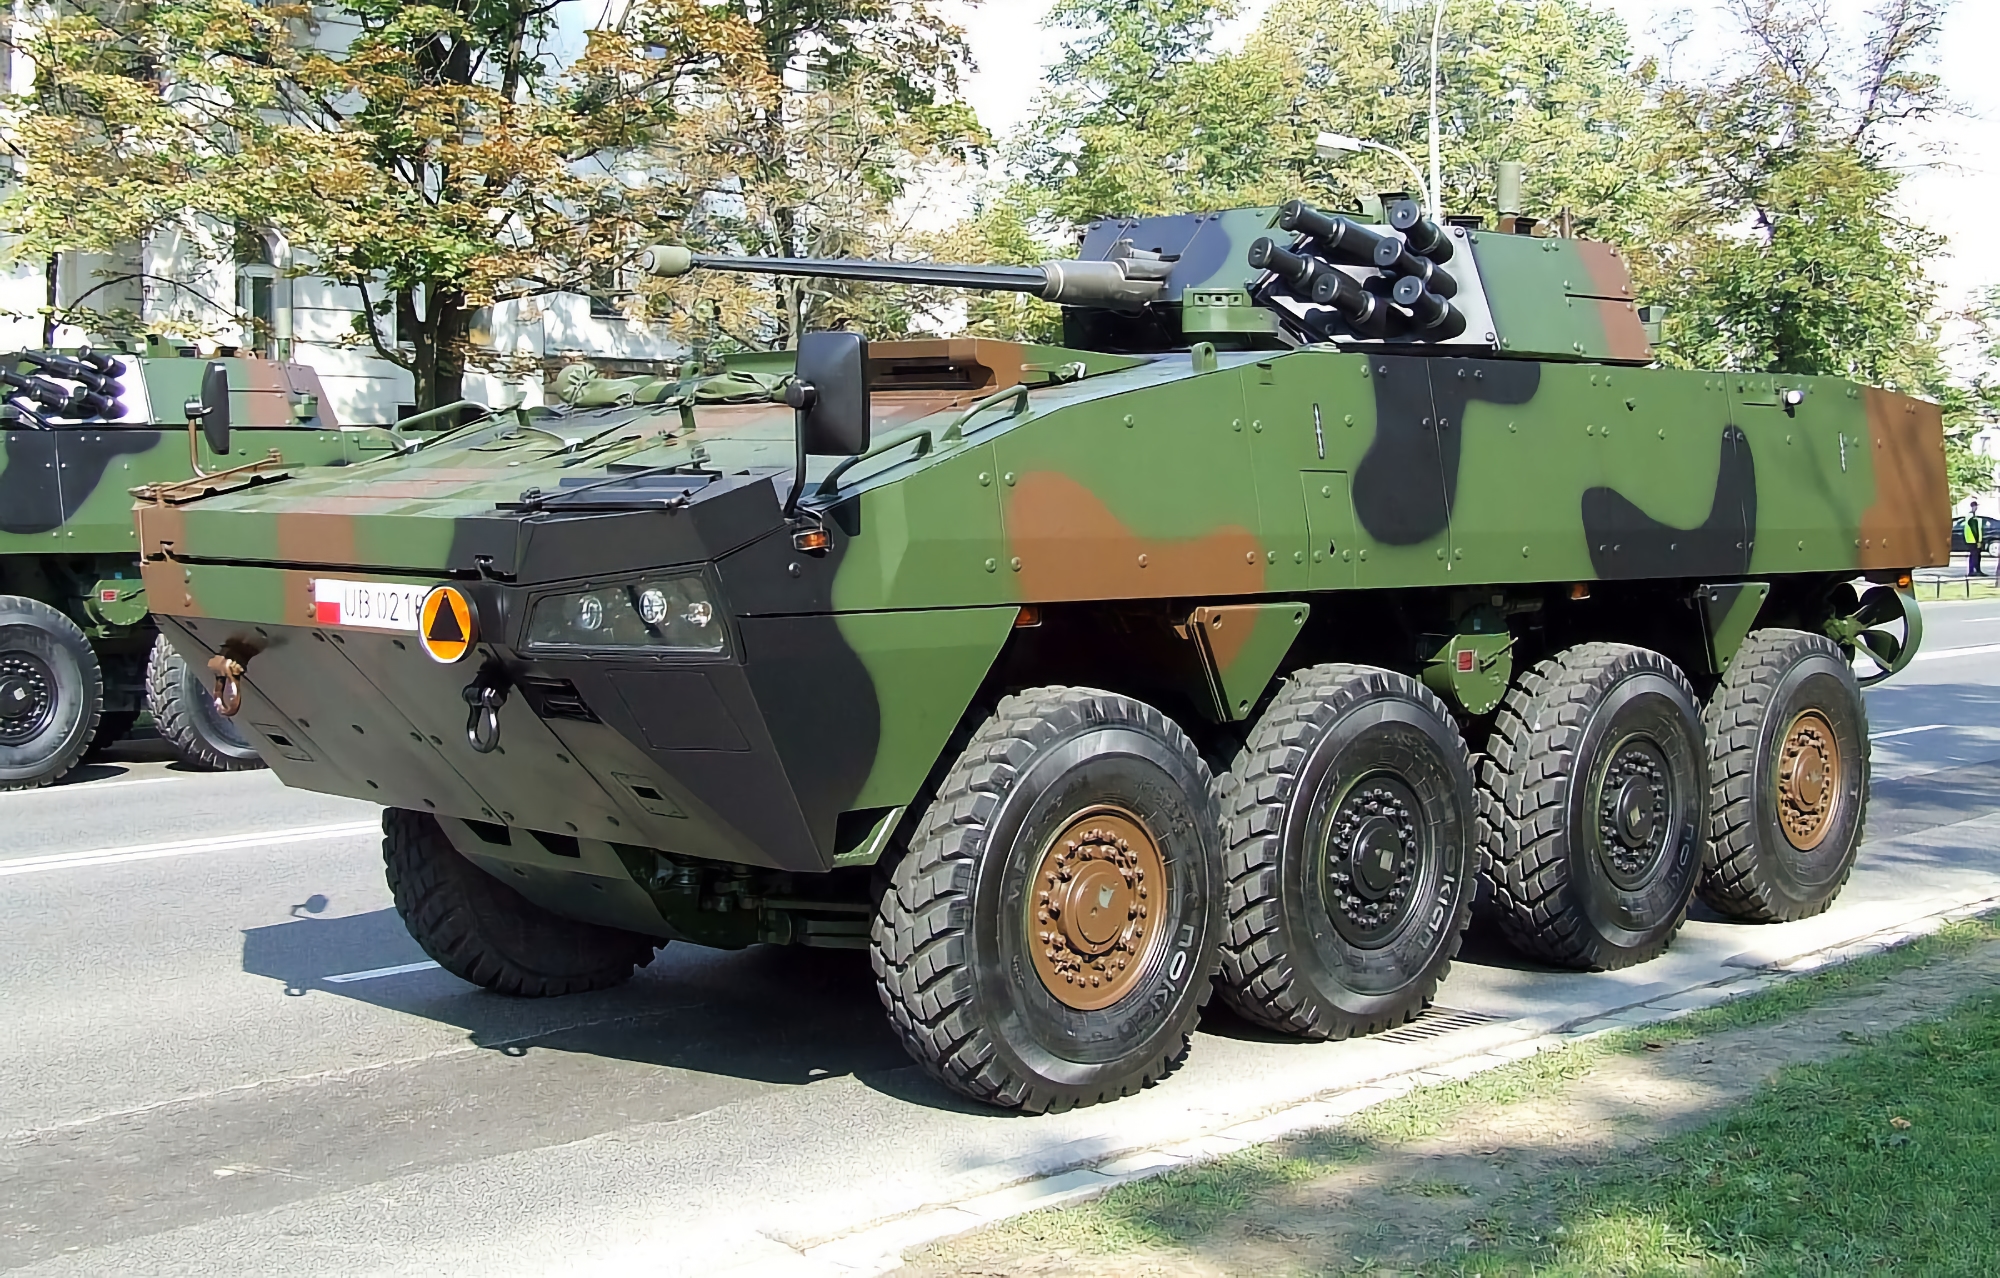 Siły zbrojne Ukrainy wykorzystują polskie transportery opancerzone KTO Rosomak, będące licencjonowaną kopią fińskiego transportera opancerzonego Patria